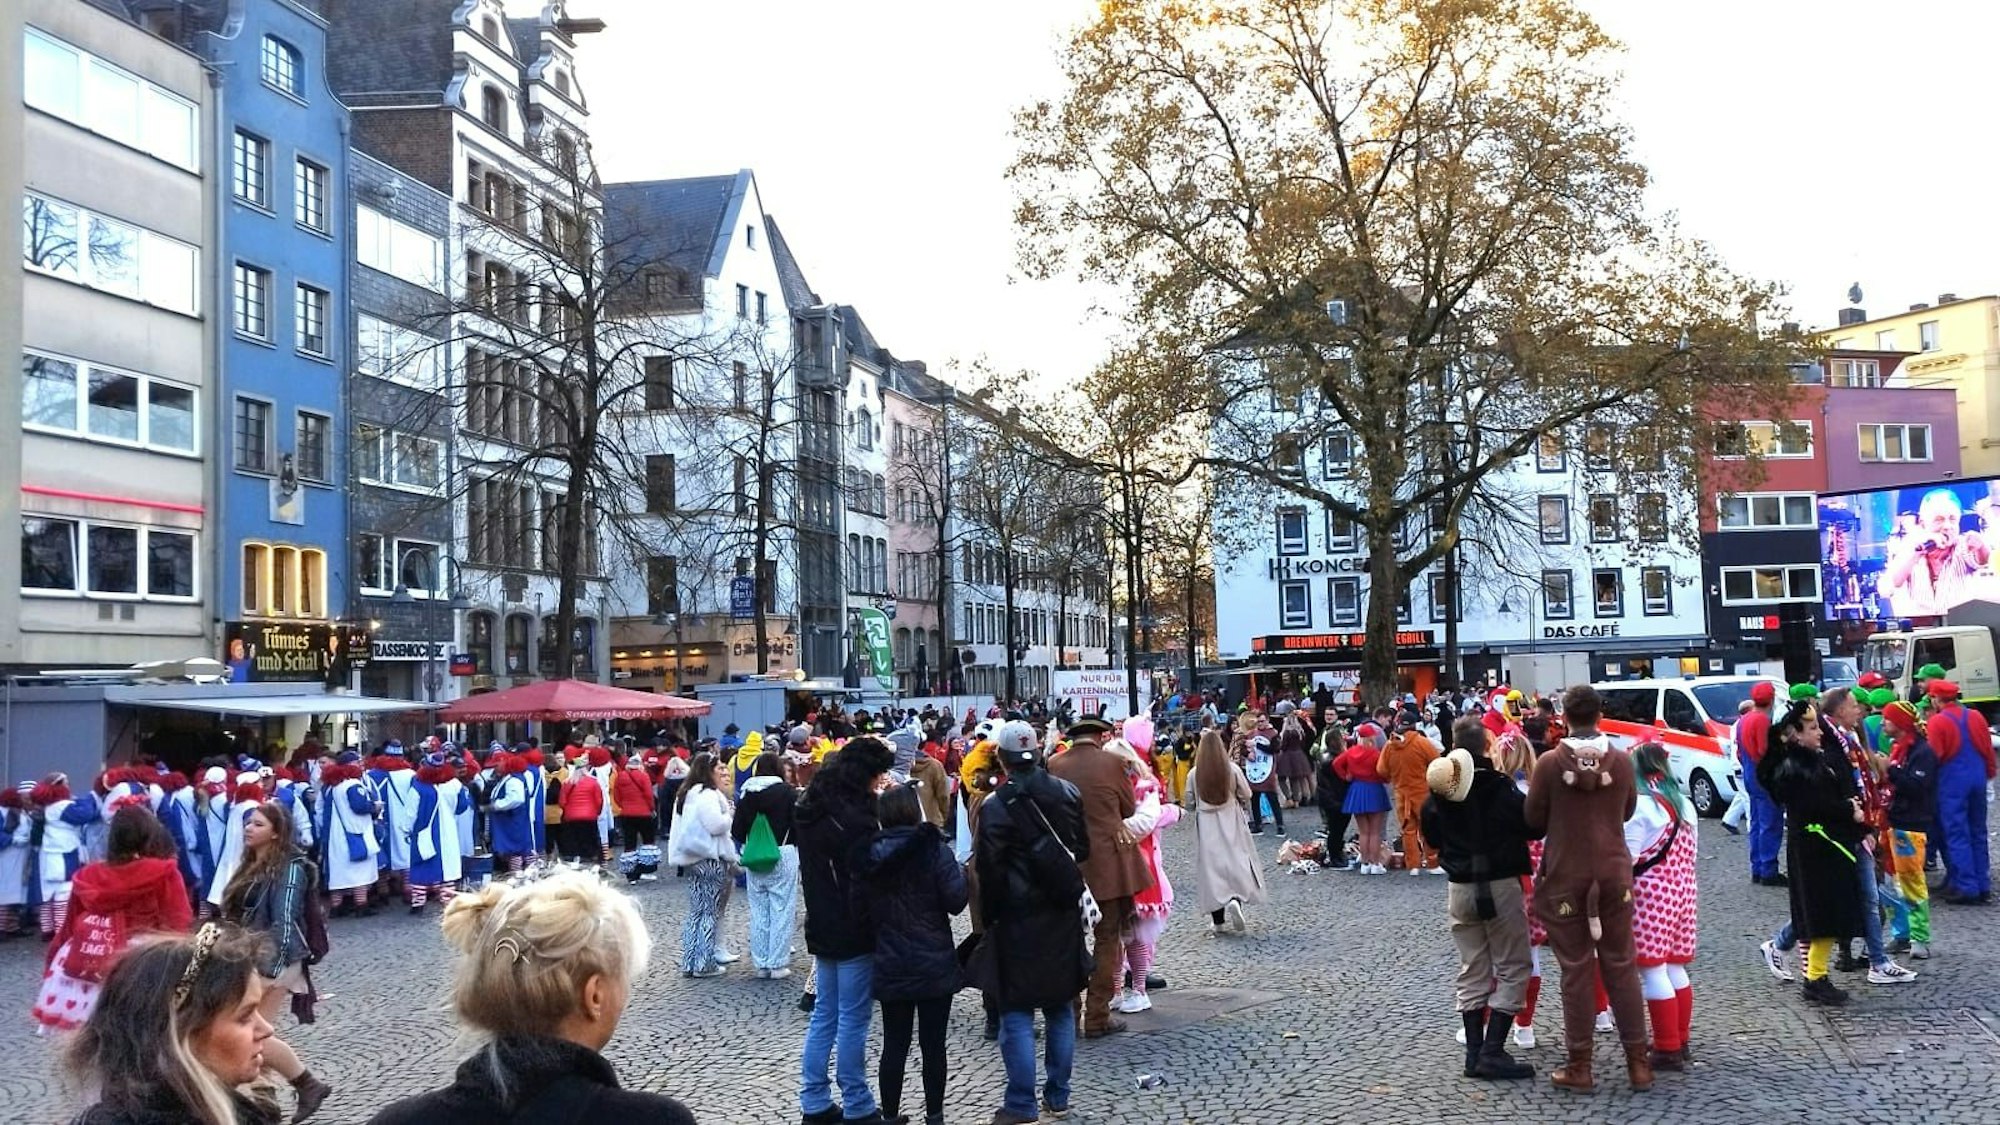 Viele Menschen in Kostümen auf dem Alter Markt in Köln.